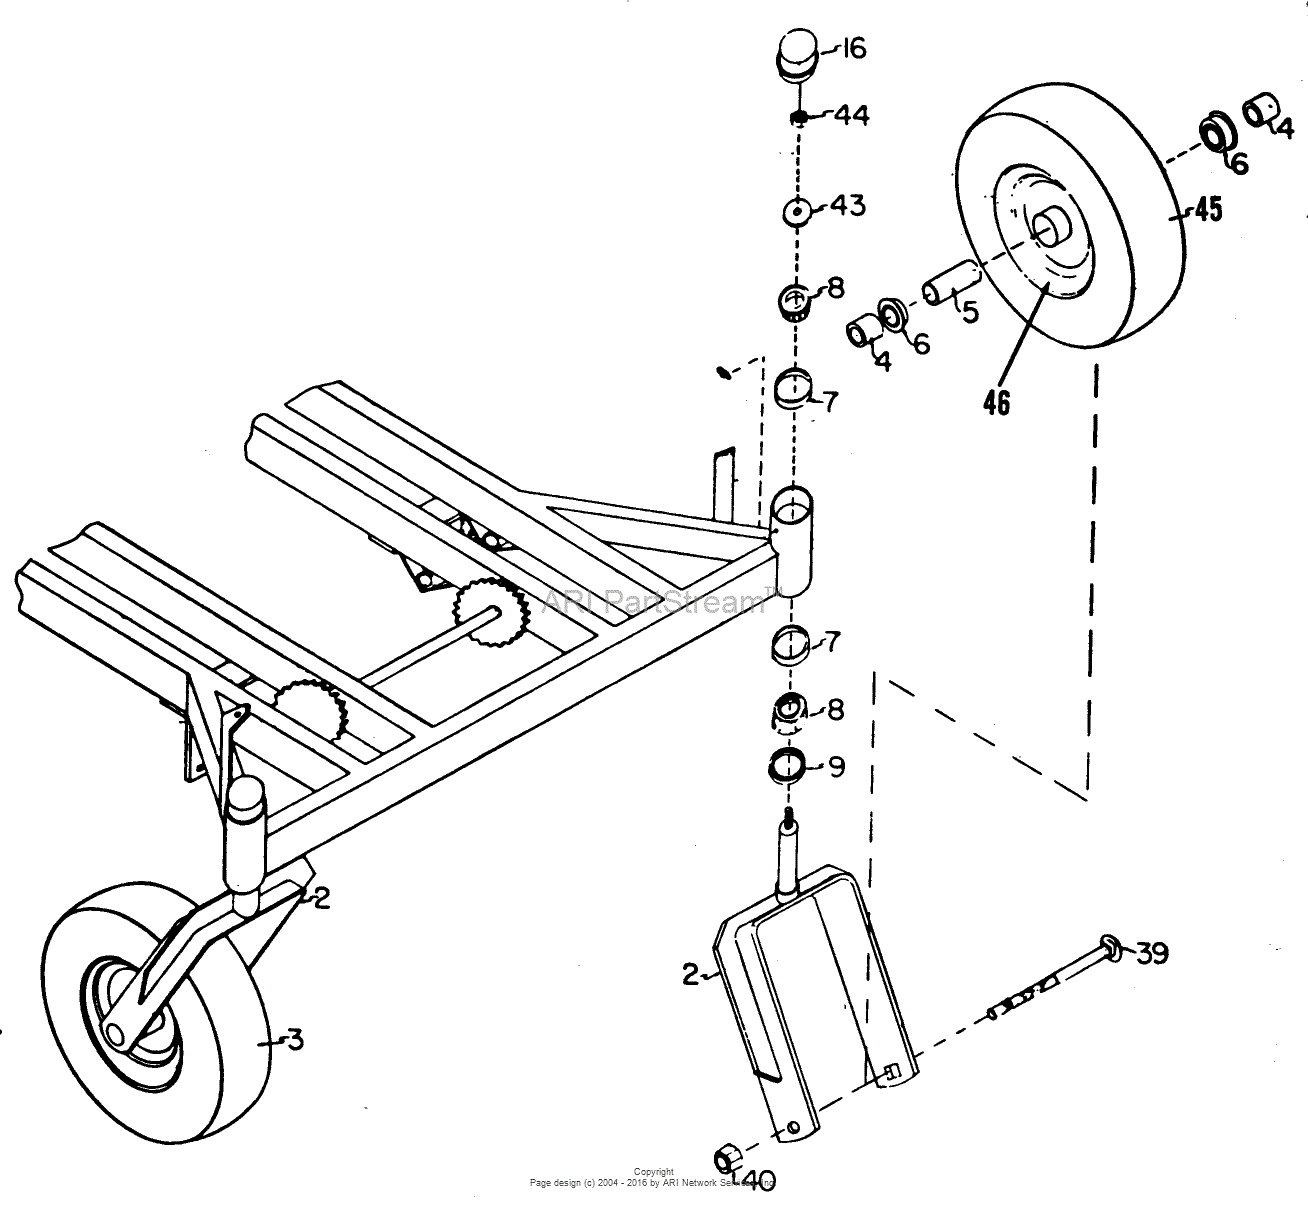 dixie chopper parts diagram